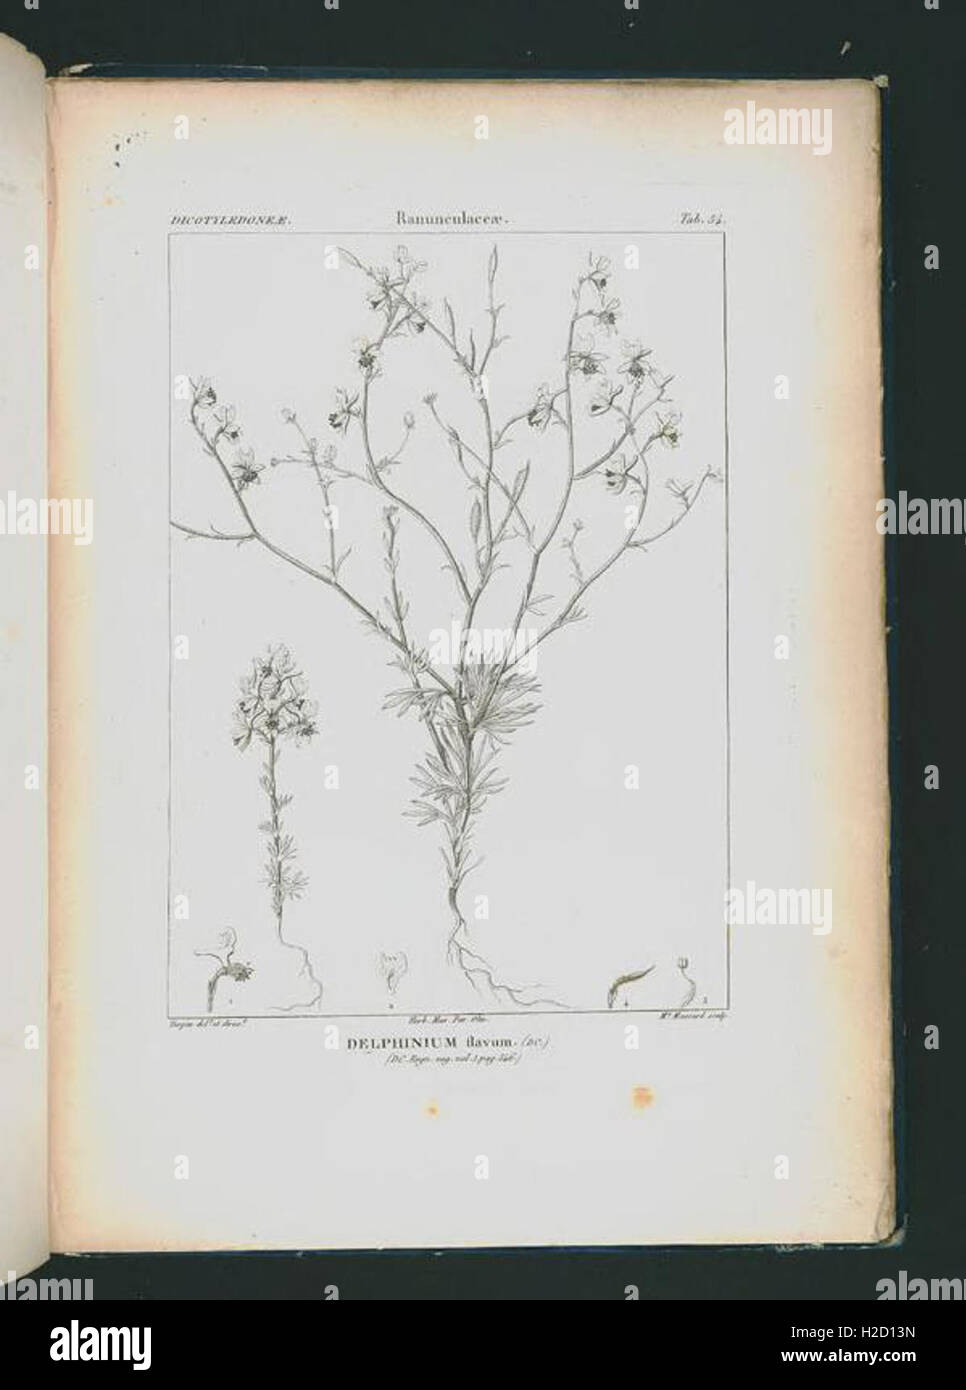 Icones selectae plantarum quas in systemate universali (Tab. 54 Stock Photo